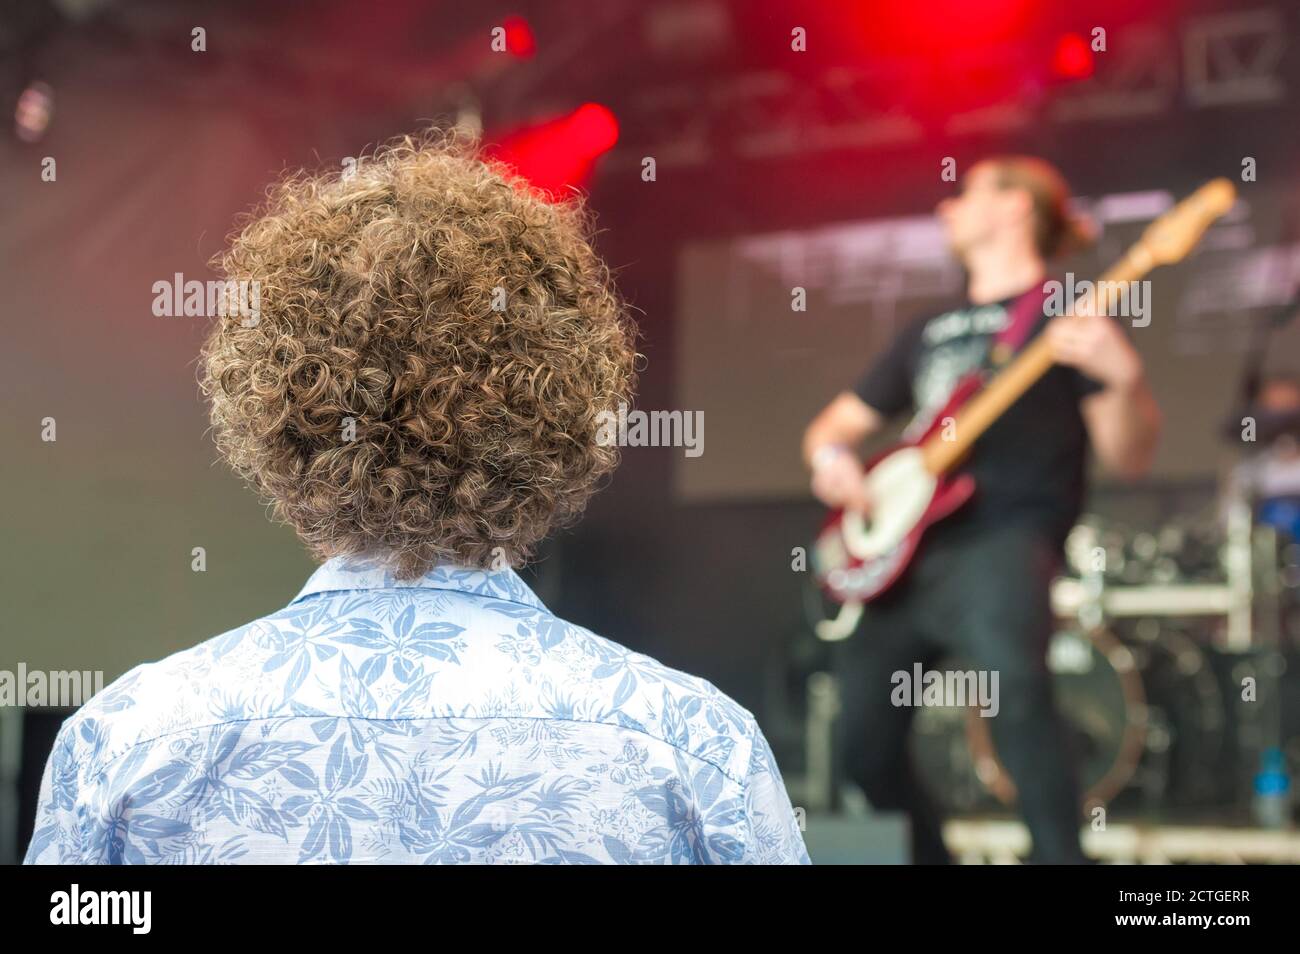 Junge Person mit sehr lockigen Haaren, die eine Rockband beobachtet Auf der Bühne Stockfoto